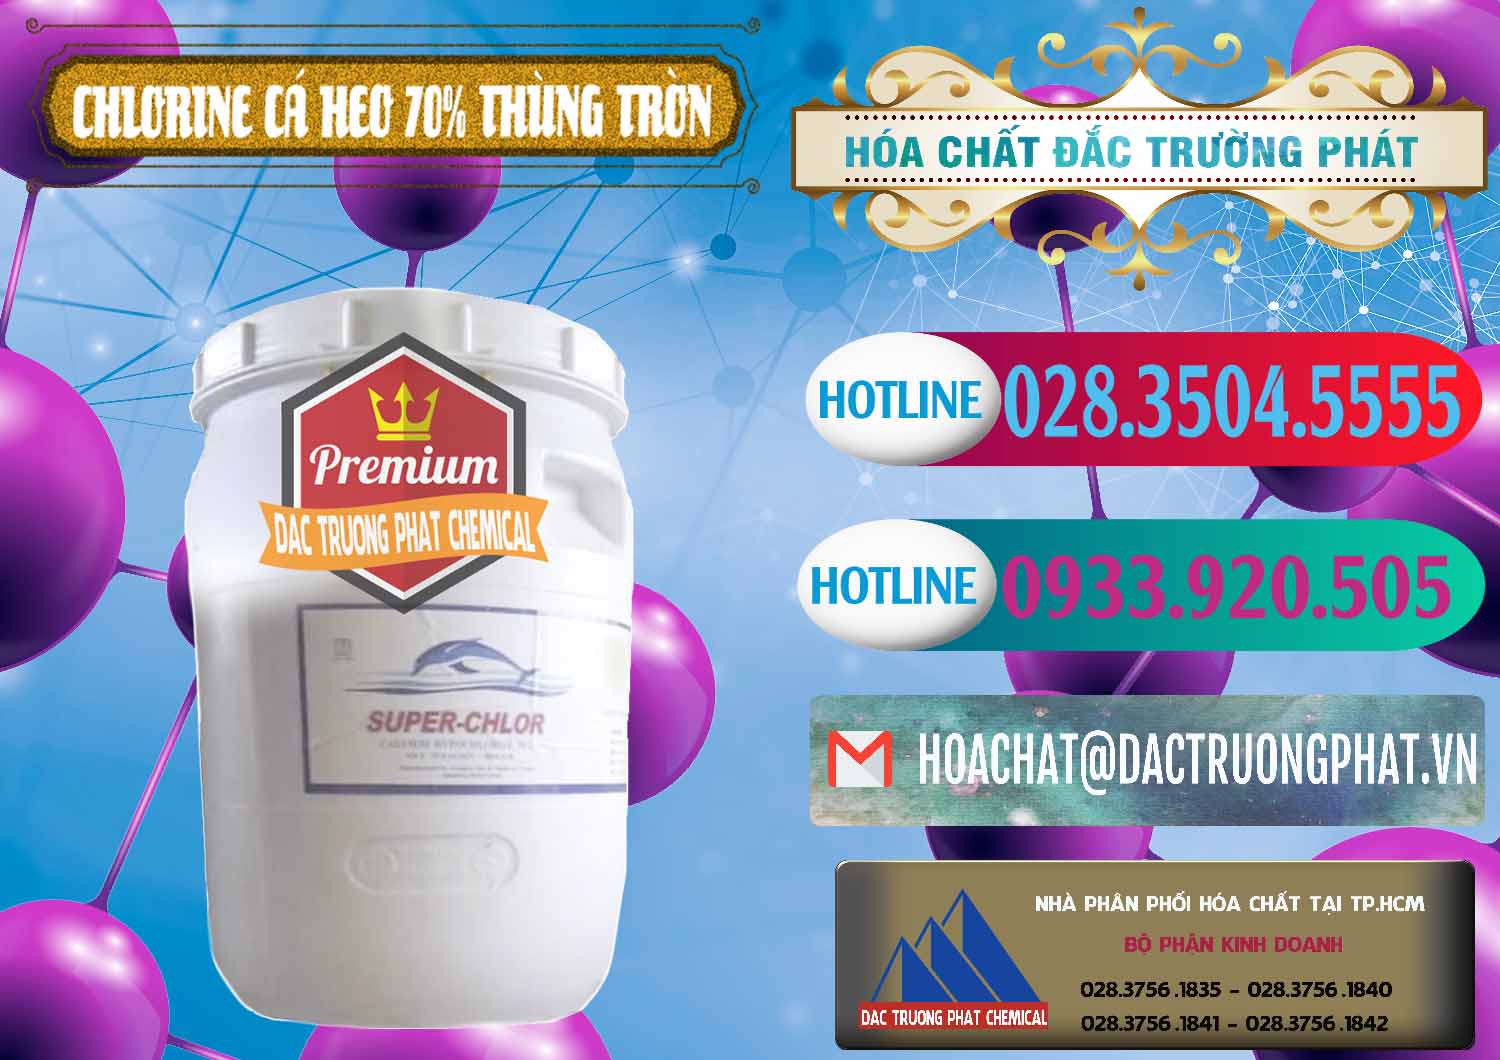 Công ty bán ( cung ứng ) Clorin - Chlorine Cá Heo 70% Super Chlor Thùng Tròn Nắp Trắng Trung Quốc China - 0239 - Nơi chuyên cung cấp & kinh doanh hóa chất tại TP.HCM - truongphat.vn